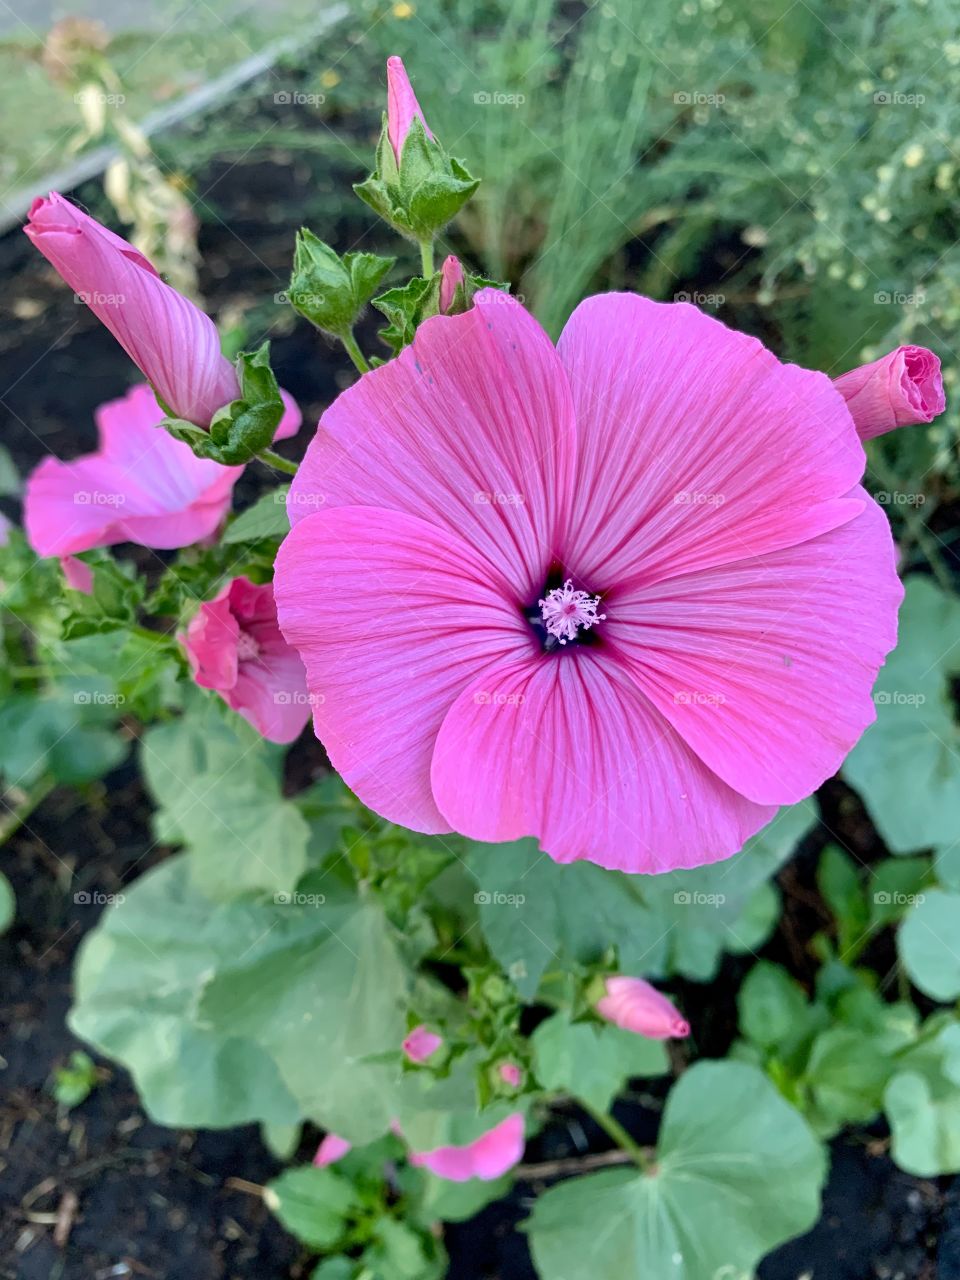 Pink flower 